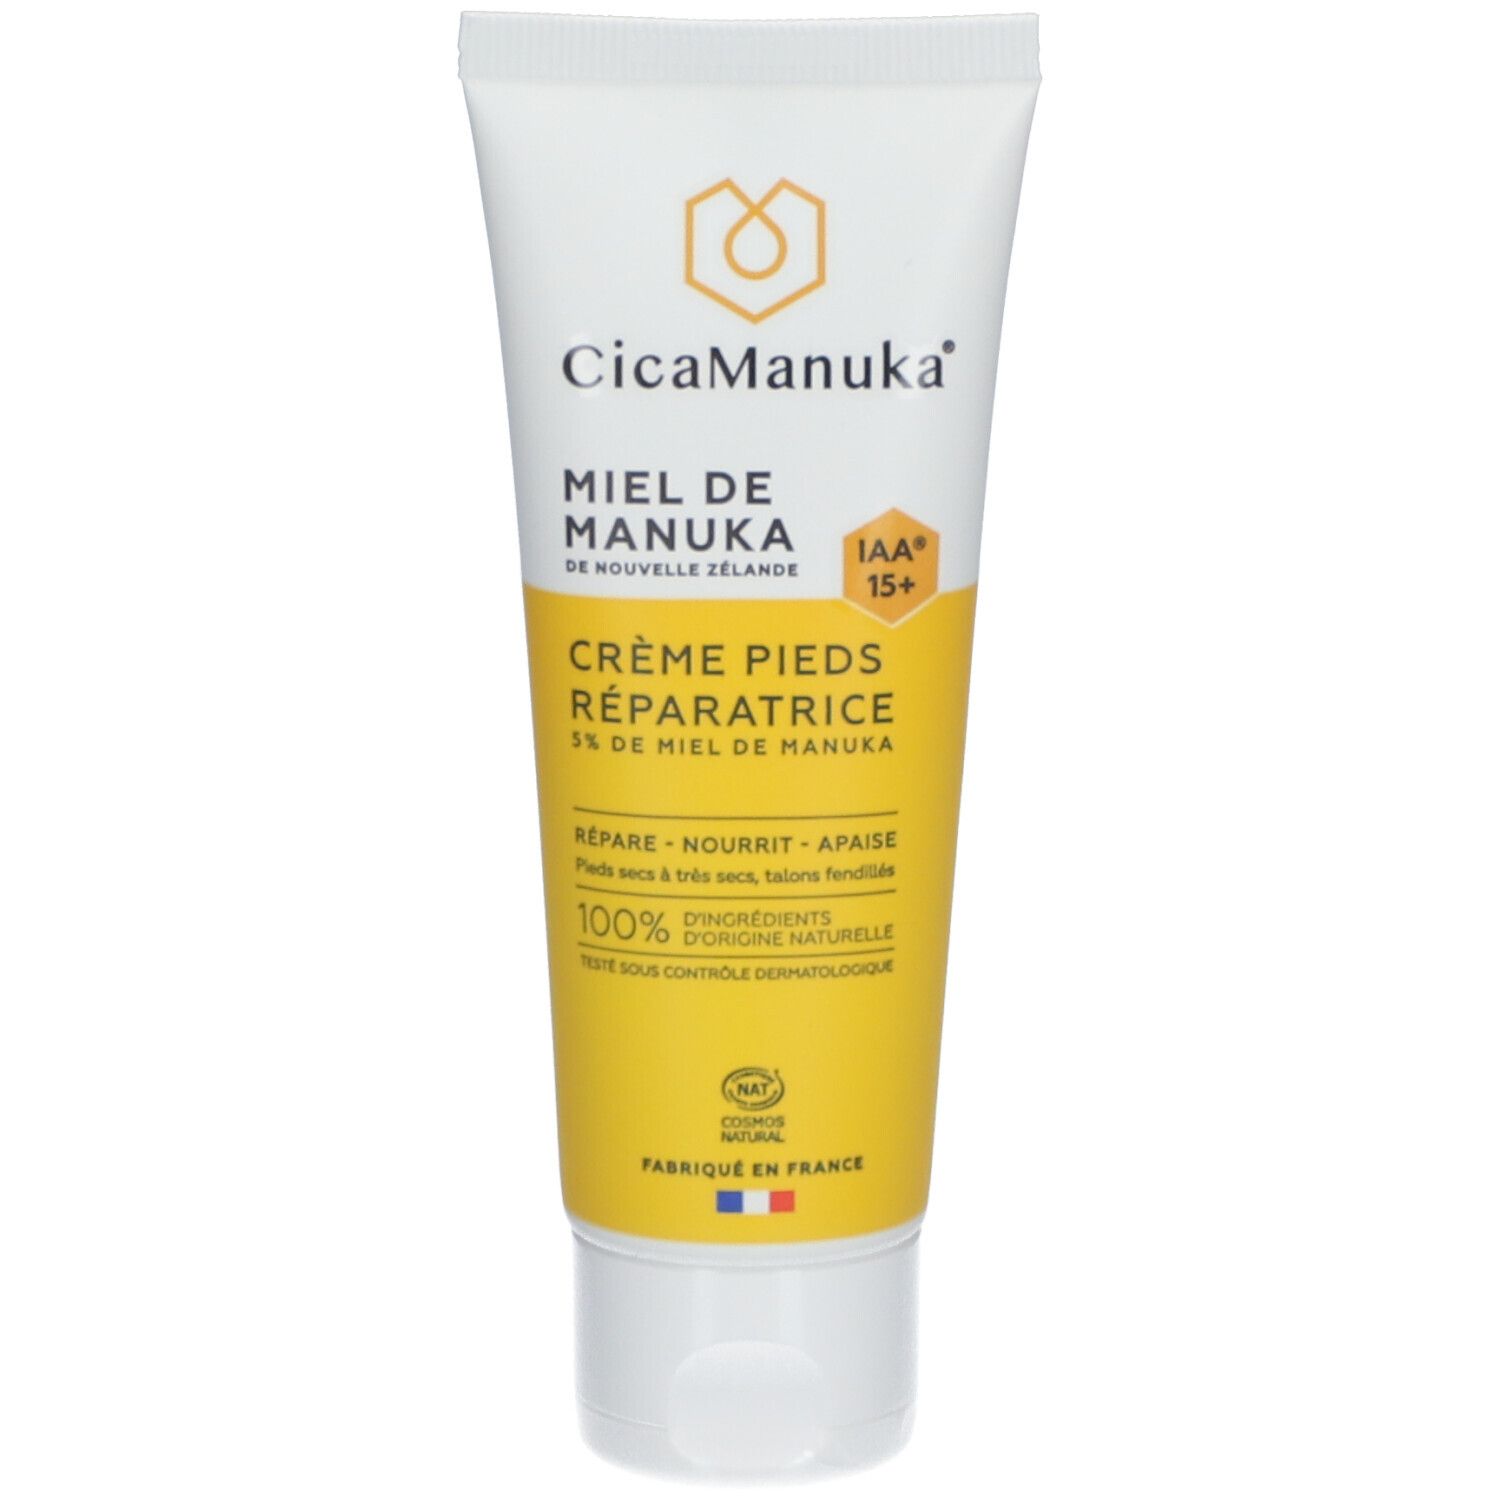 CicaManuka® Crème pieds réparatrice au miel de Manuka Iaa15+